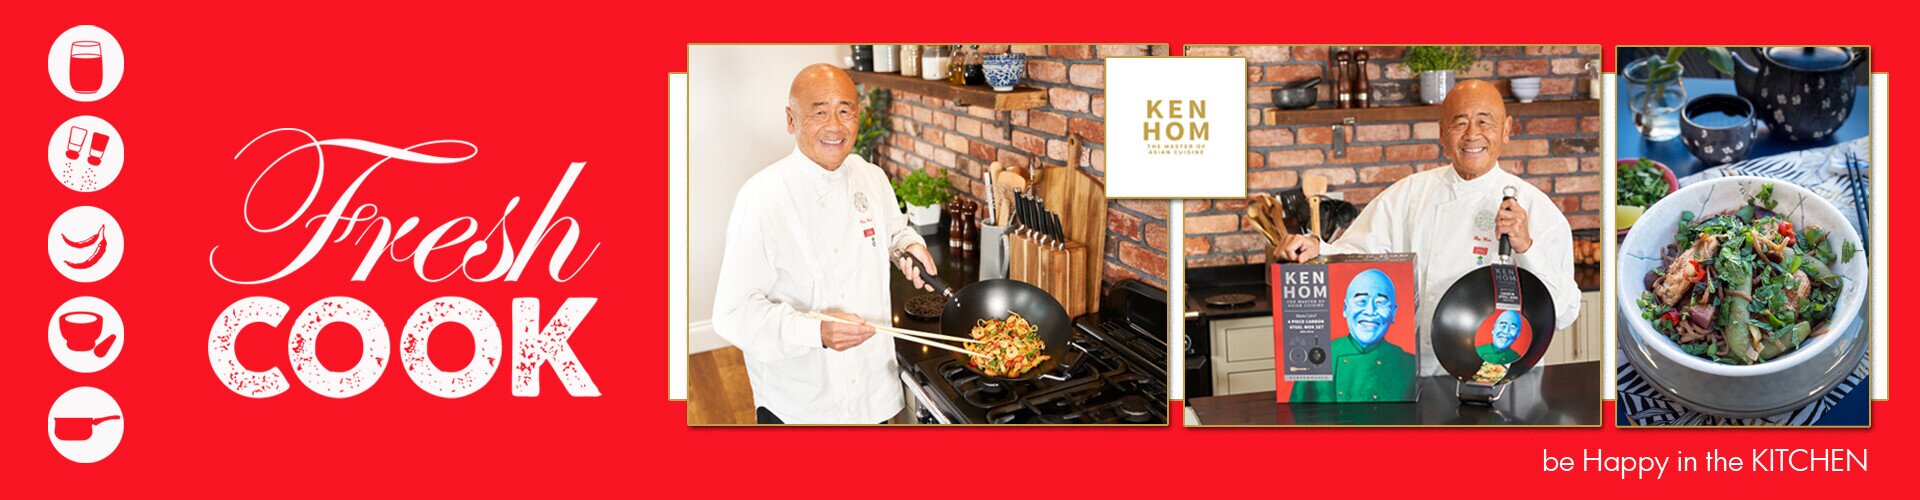 Fresh Cook Ken Hom wok pánve